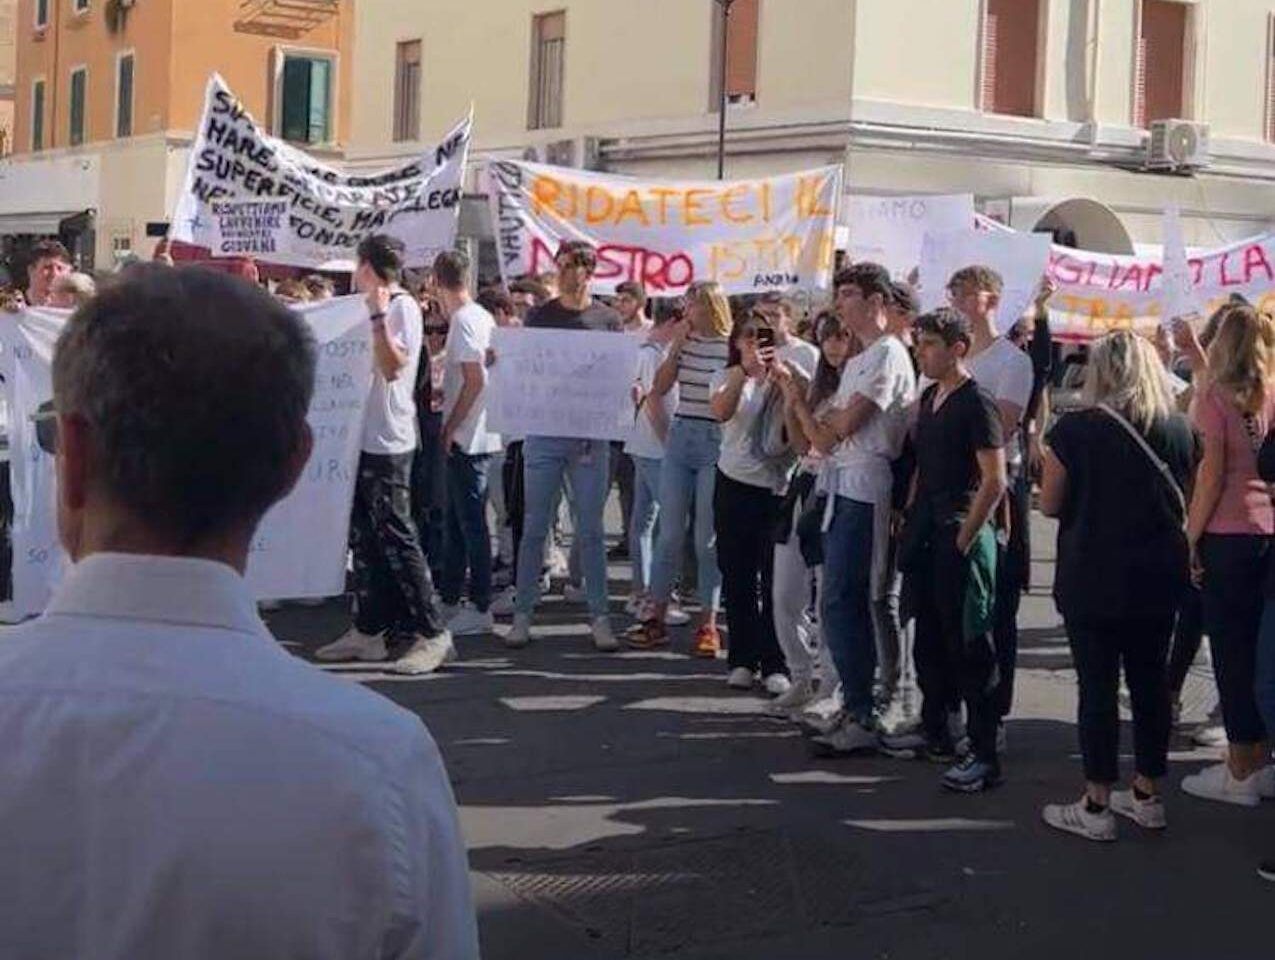 Roma, si prospetta una fine settimana difficile per la mobilità a causa di alcune manifestazioni che interesseranno la Capitale, cosa sapere.